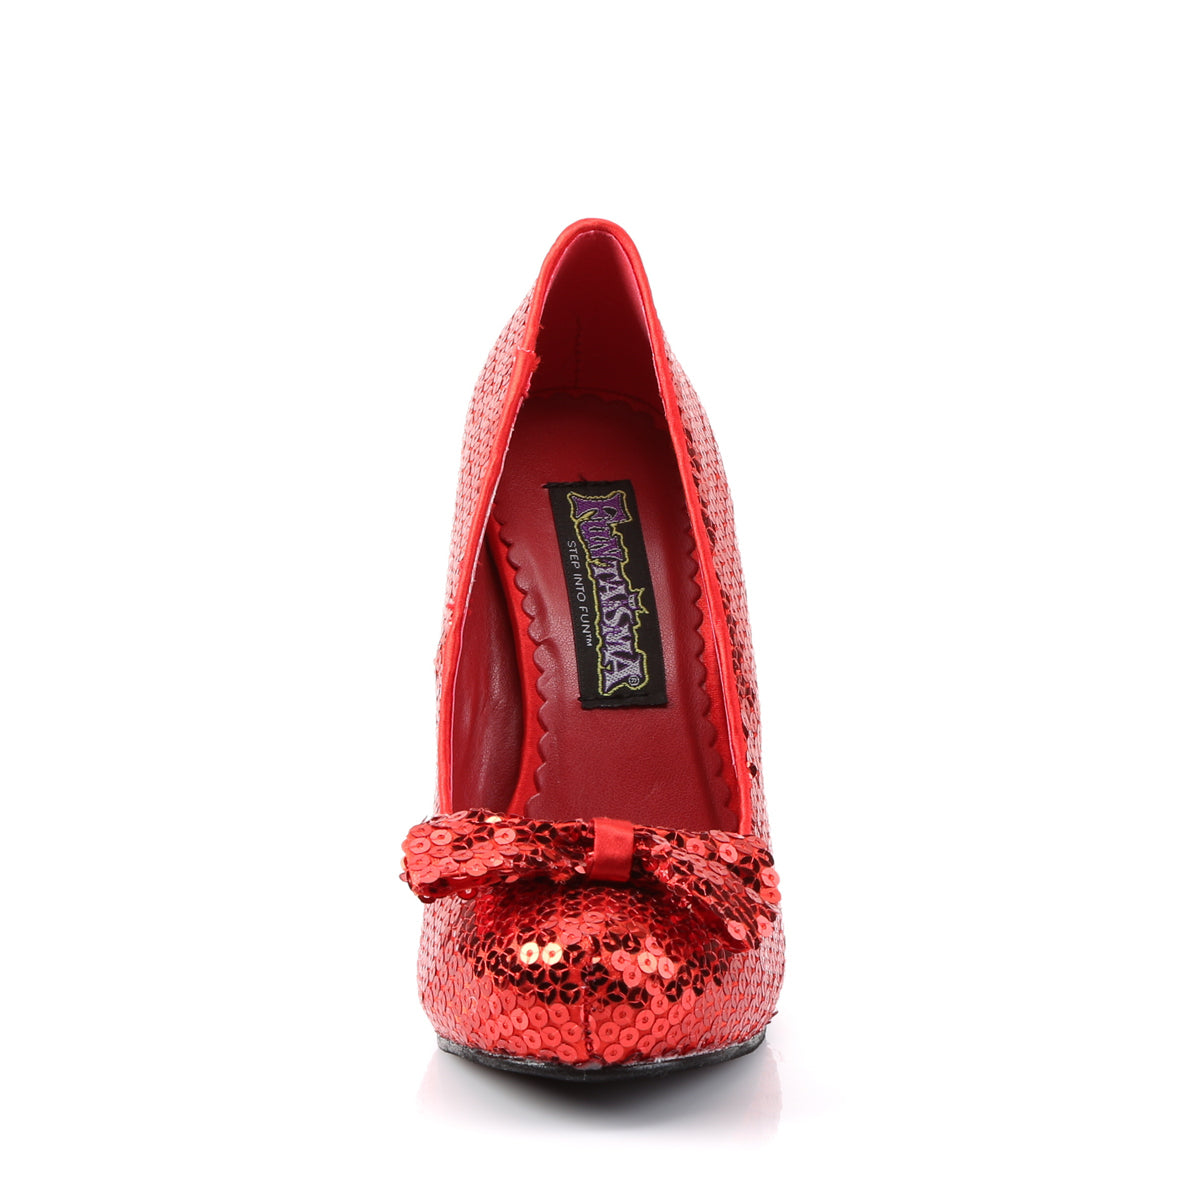 OZ-06 Funtasma 4.5 Inch Heel Red Sequins Women's Costume Shoes Funtasma Costume Shoes Alternative Footwear